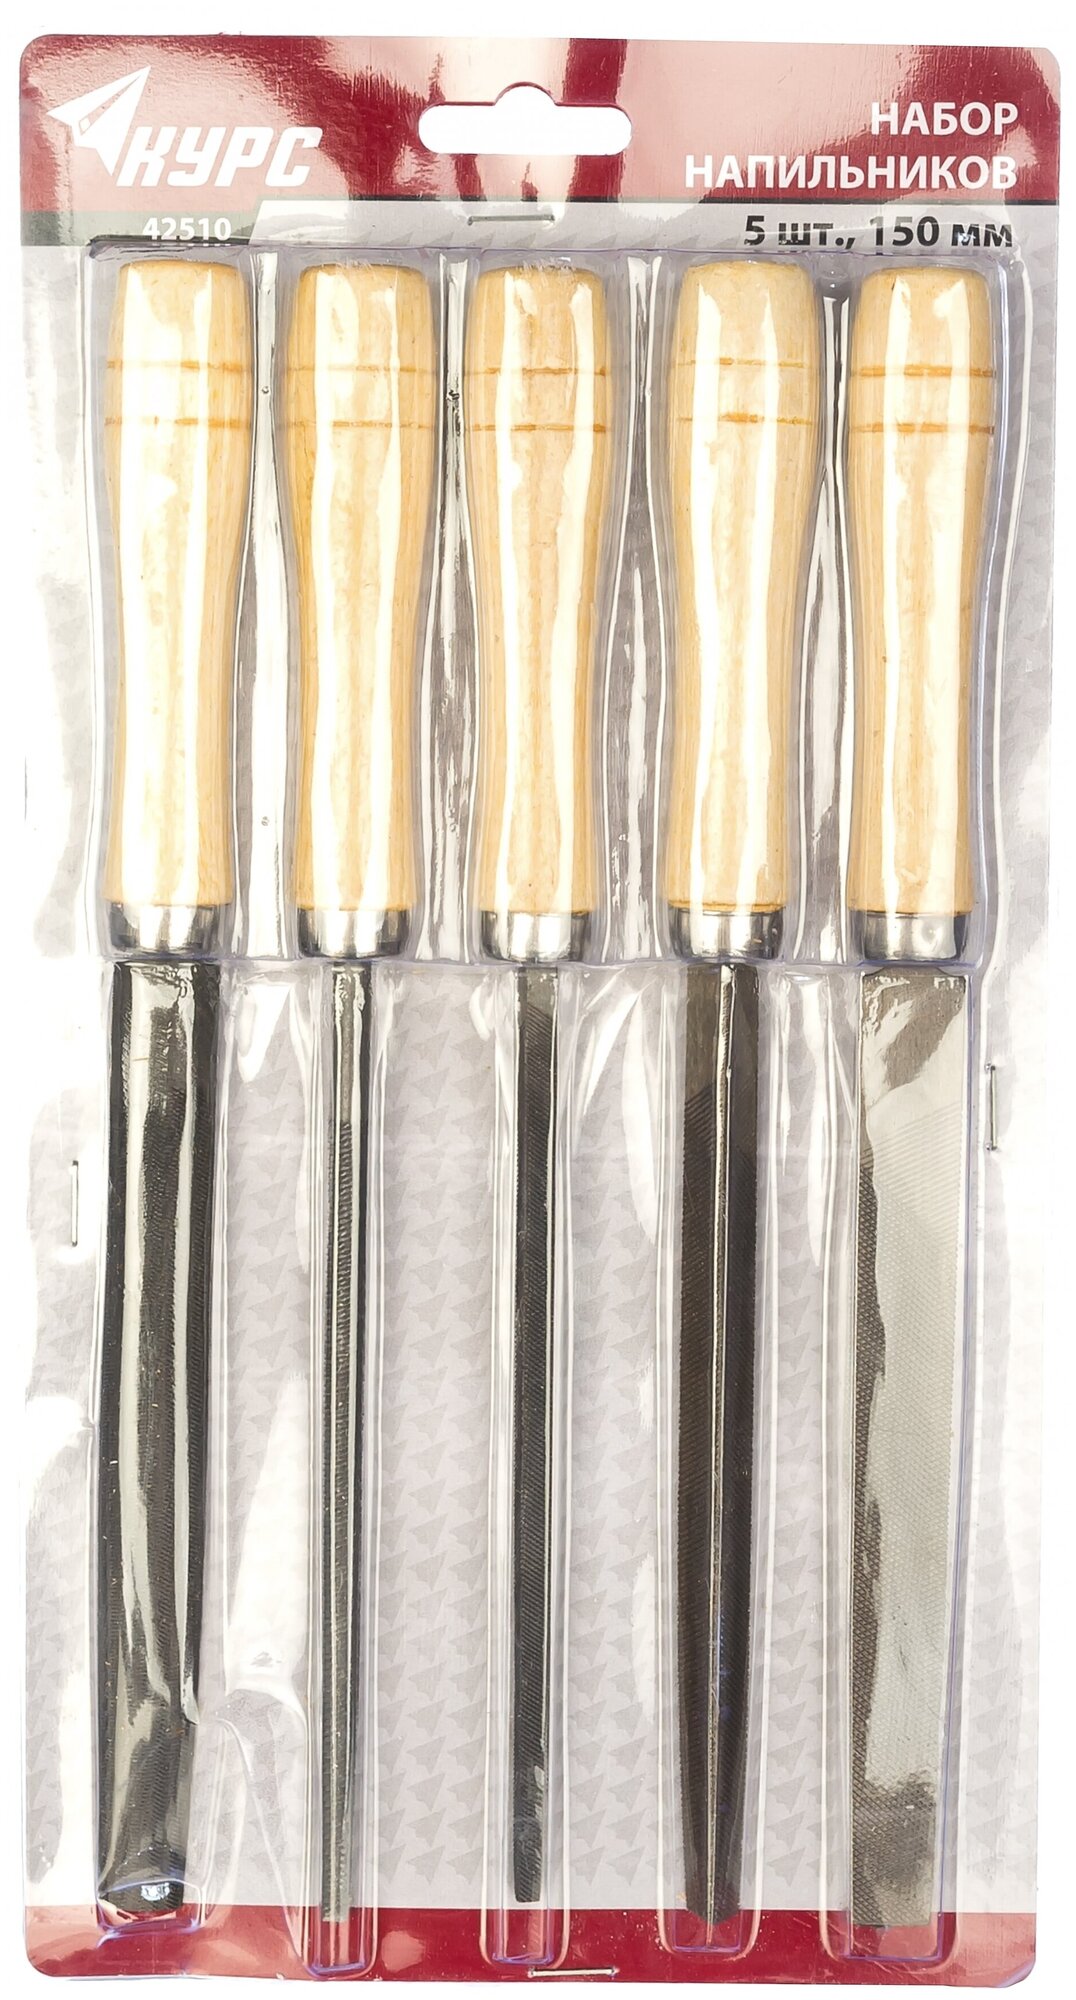 Напильники курс 42510, набор 5 шт., деревянная ручка 150 мм